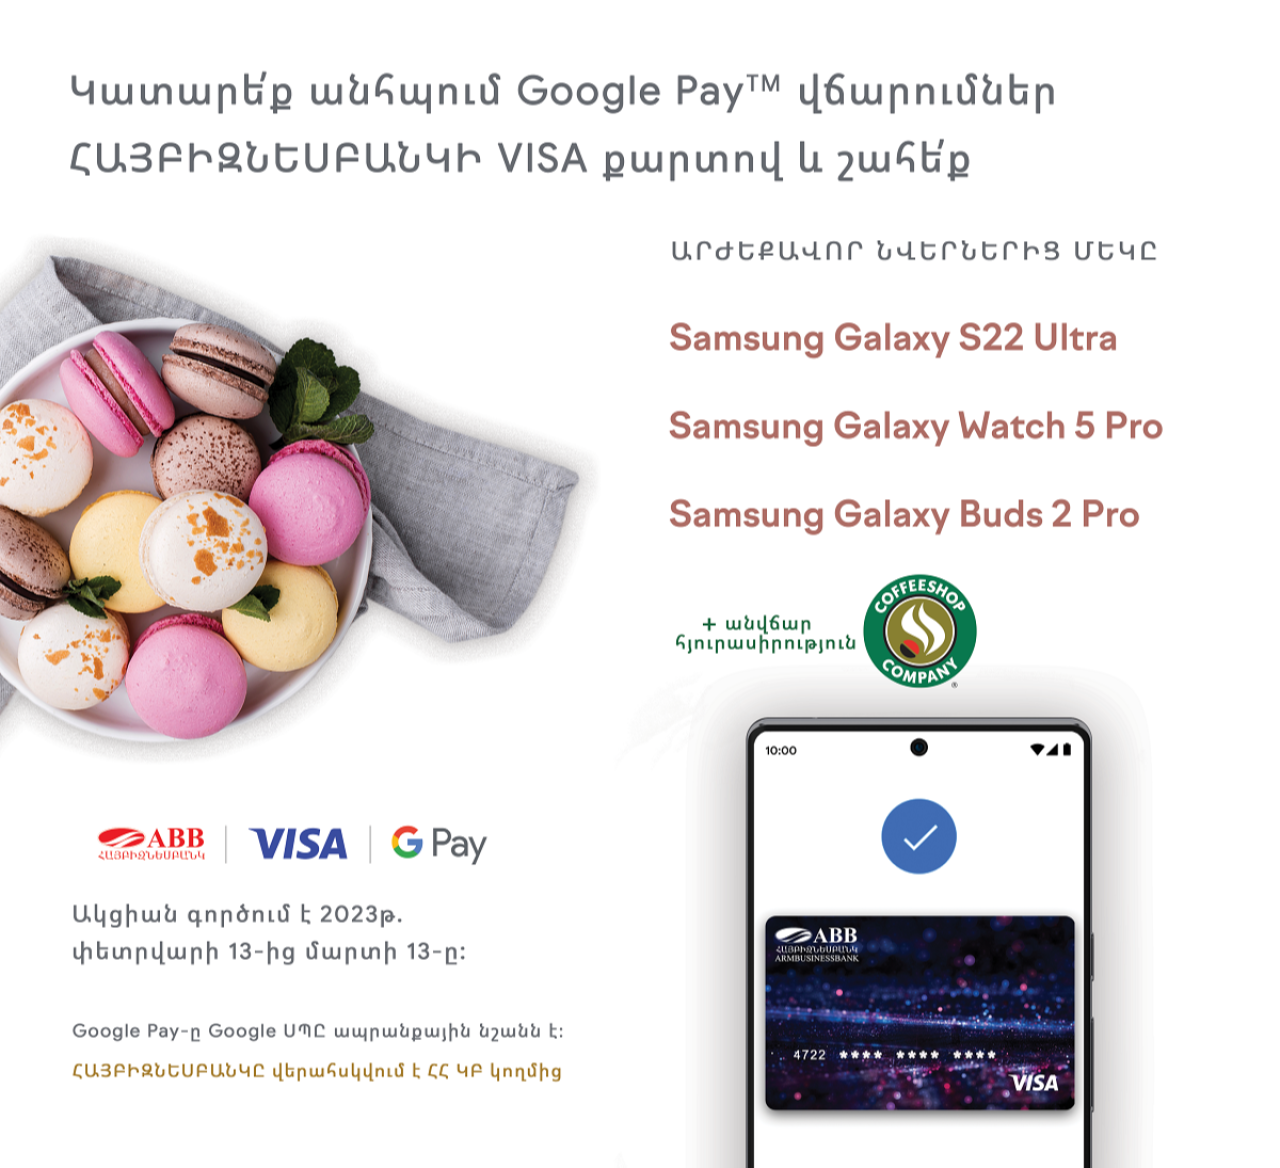 Նվերներ եւ հյուրասիրություն ՀԱՅԲԻԶՆԵՍԲԱՆԿԻ Visa քարտով Google Pay վճարումների համար